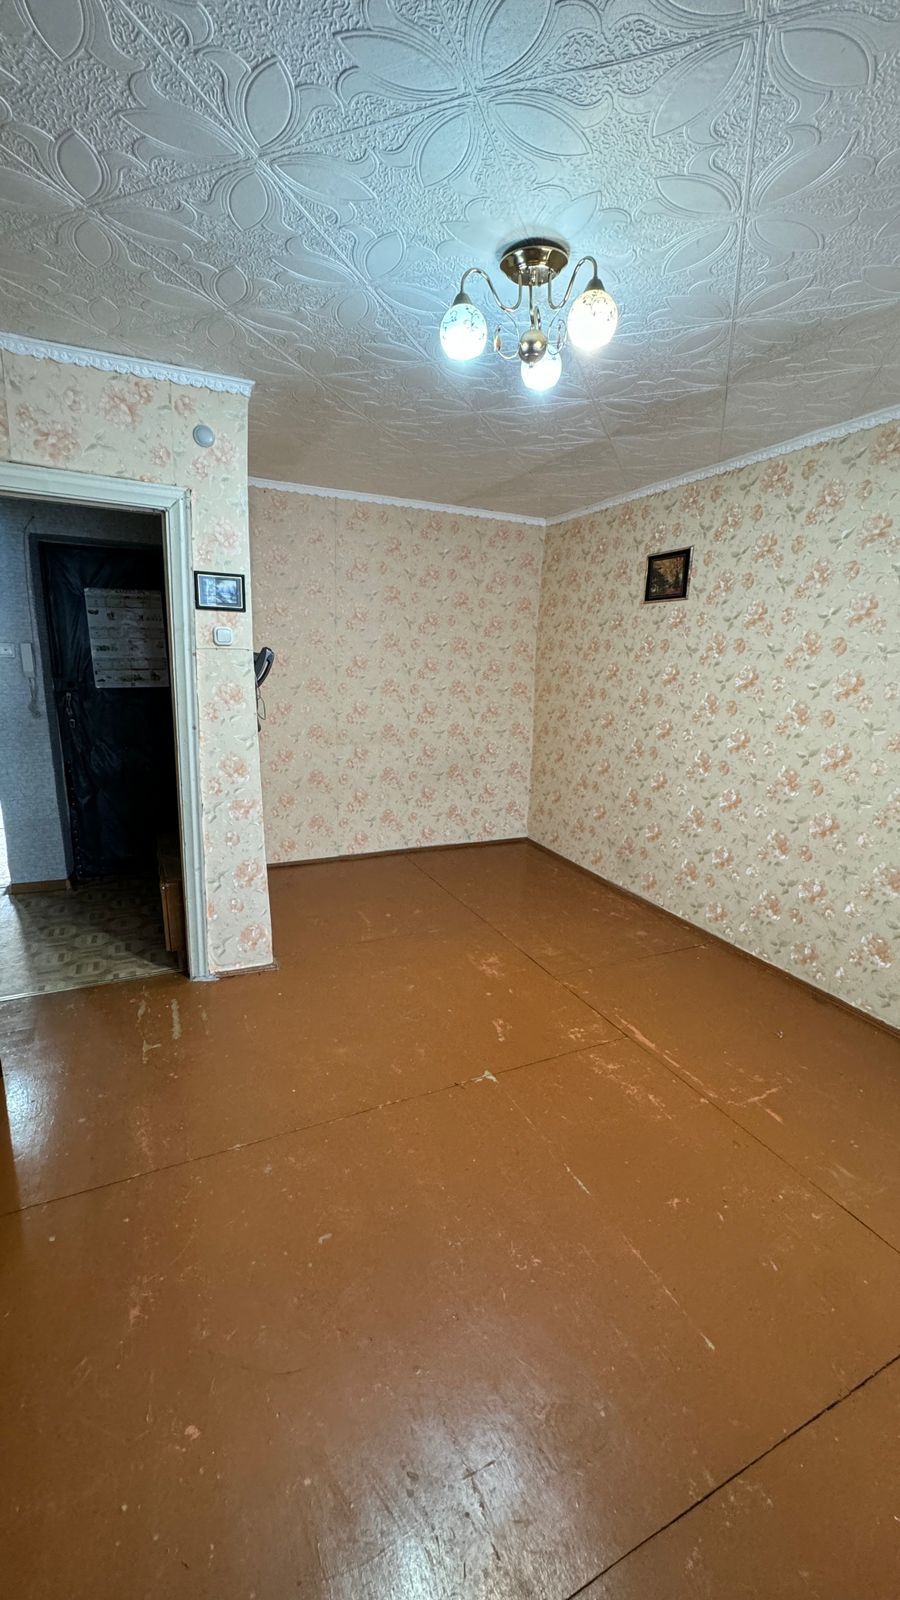 Продается 2 комнатная квартира на улице Гашека д12/1,район КЖБИ.